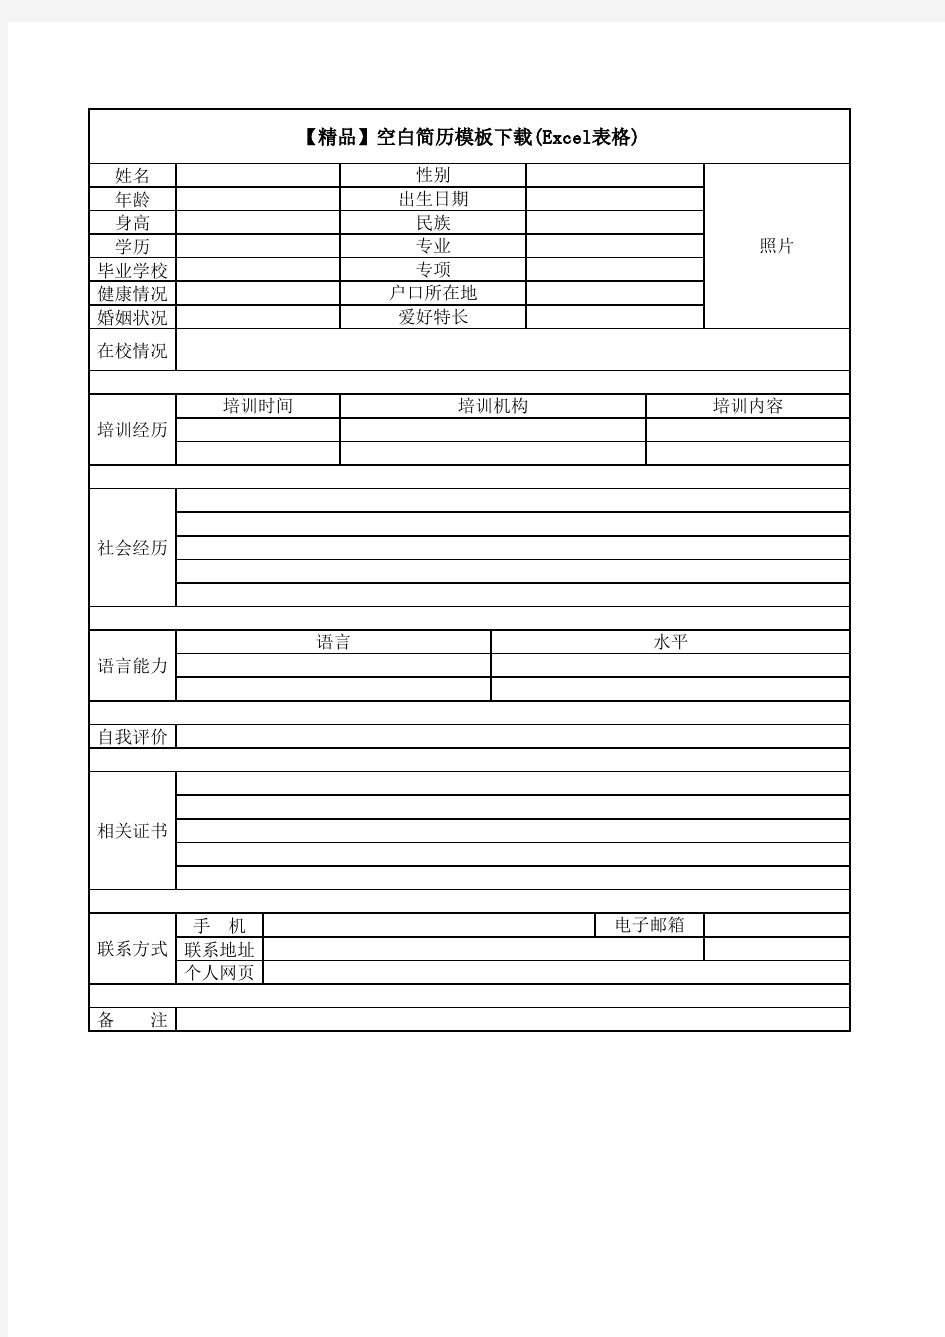 【精品】空白简历模板下载(Excel表格)